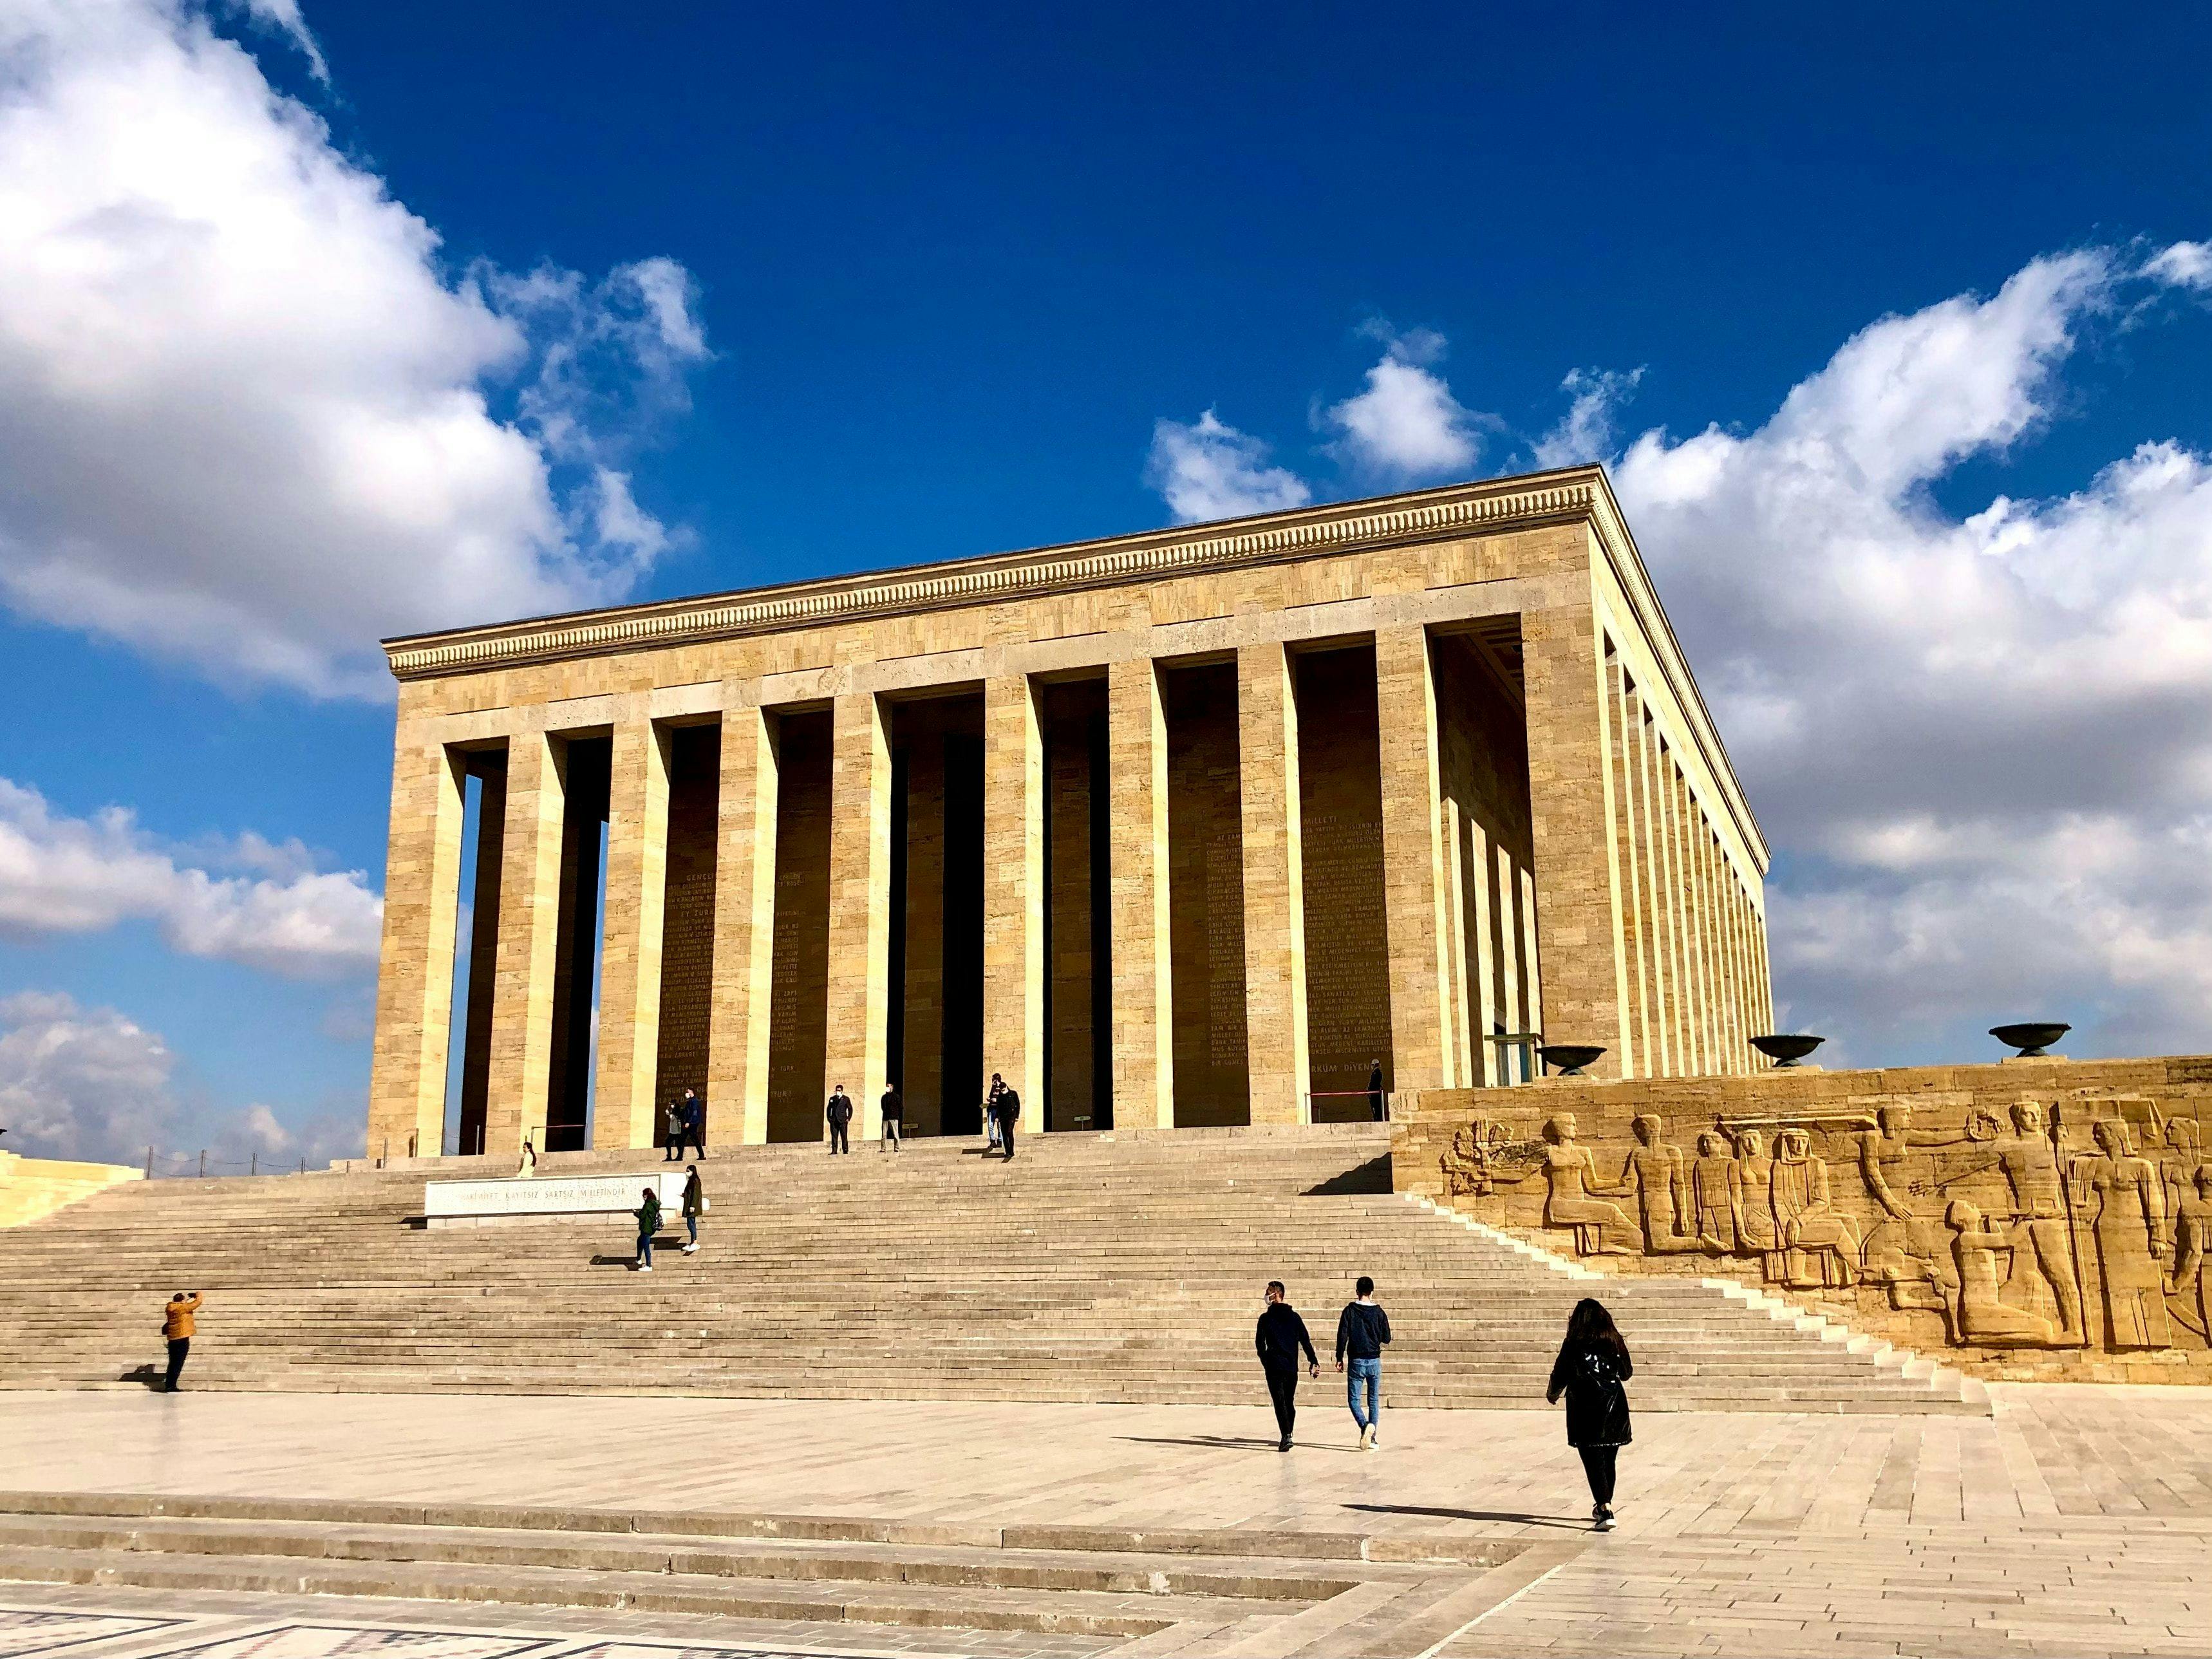 Mausoleum of Antıkbar in Ankara Turkey.